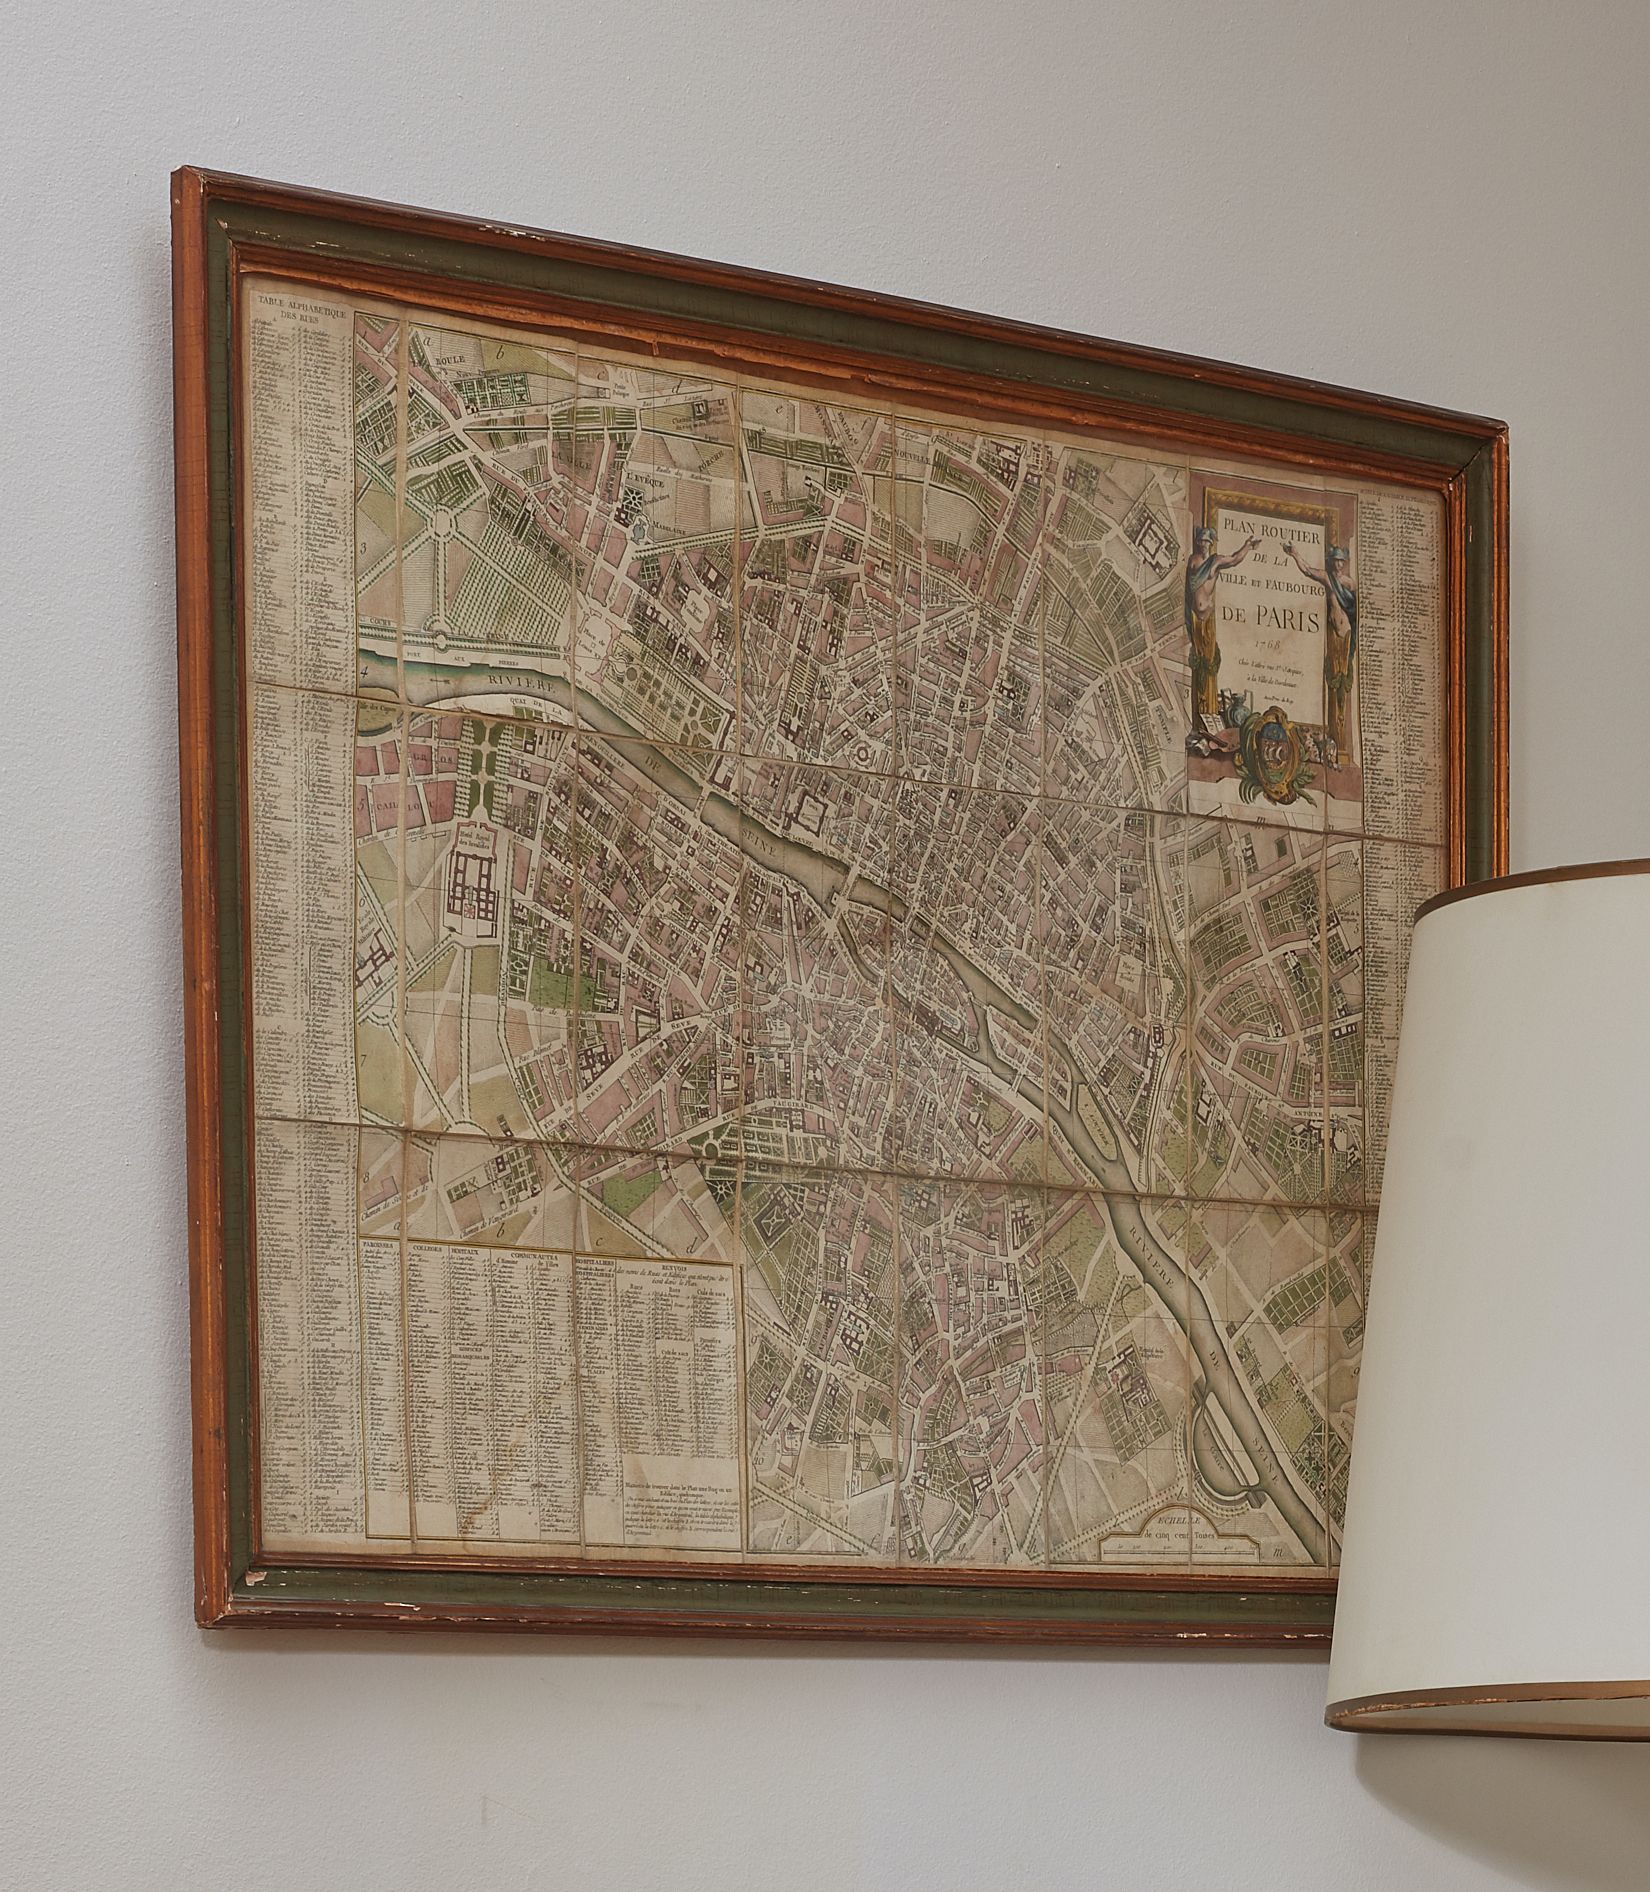 Null Straßenplan der Stadt und des Vororts von Paris 1768.
55 x 77 cm